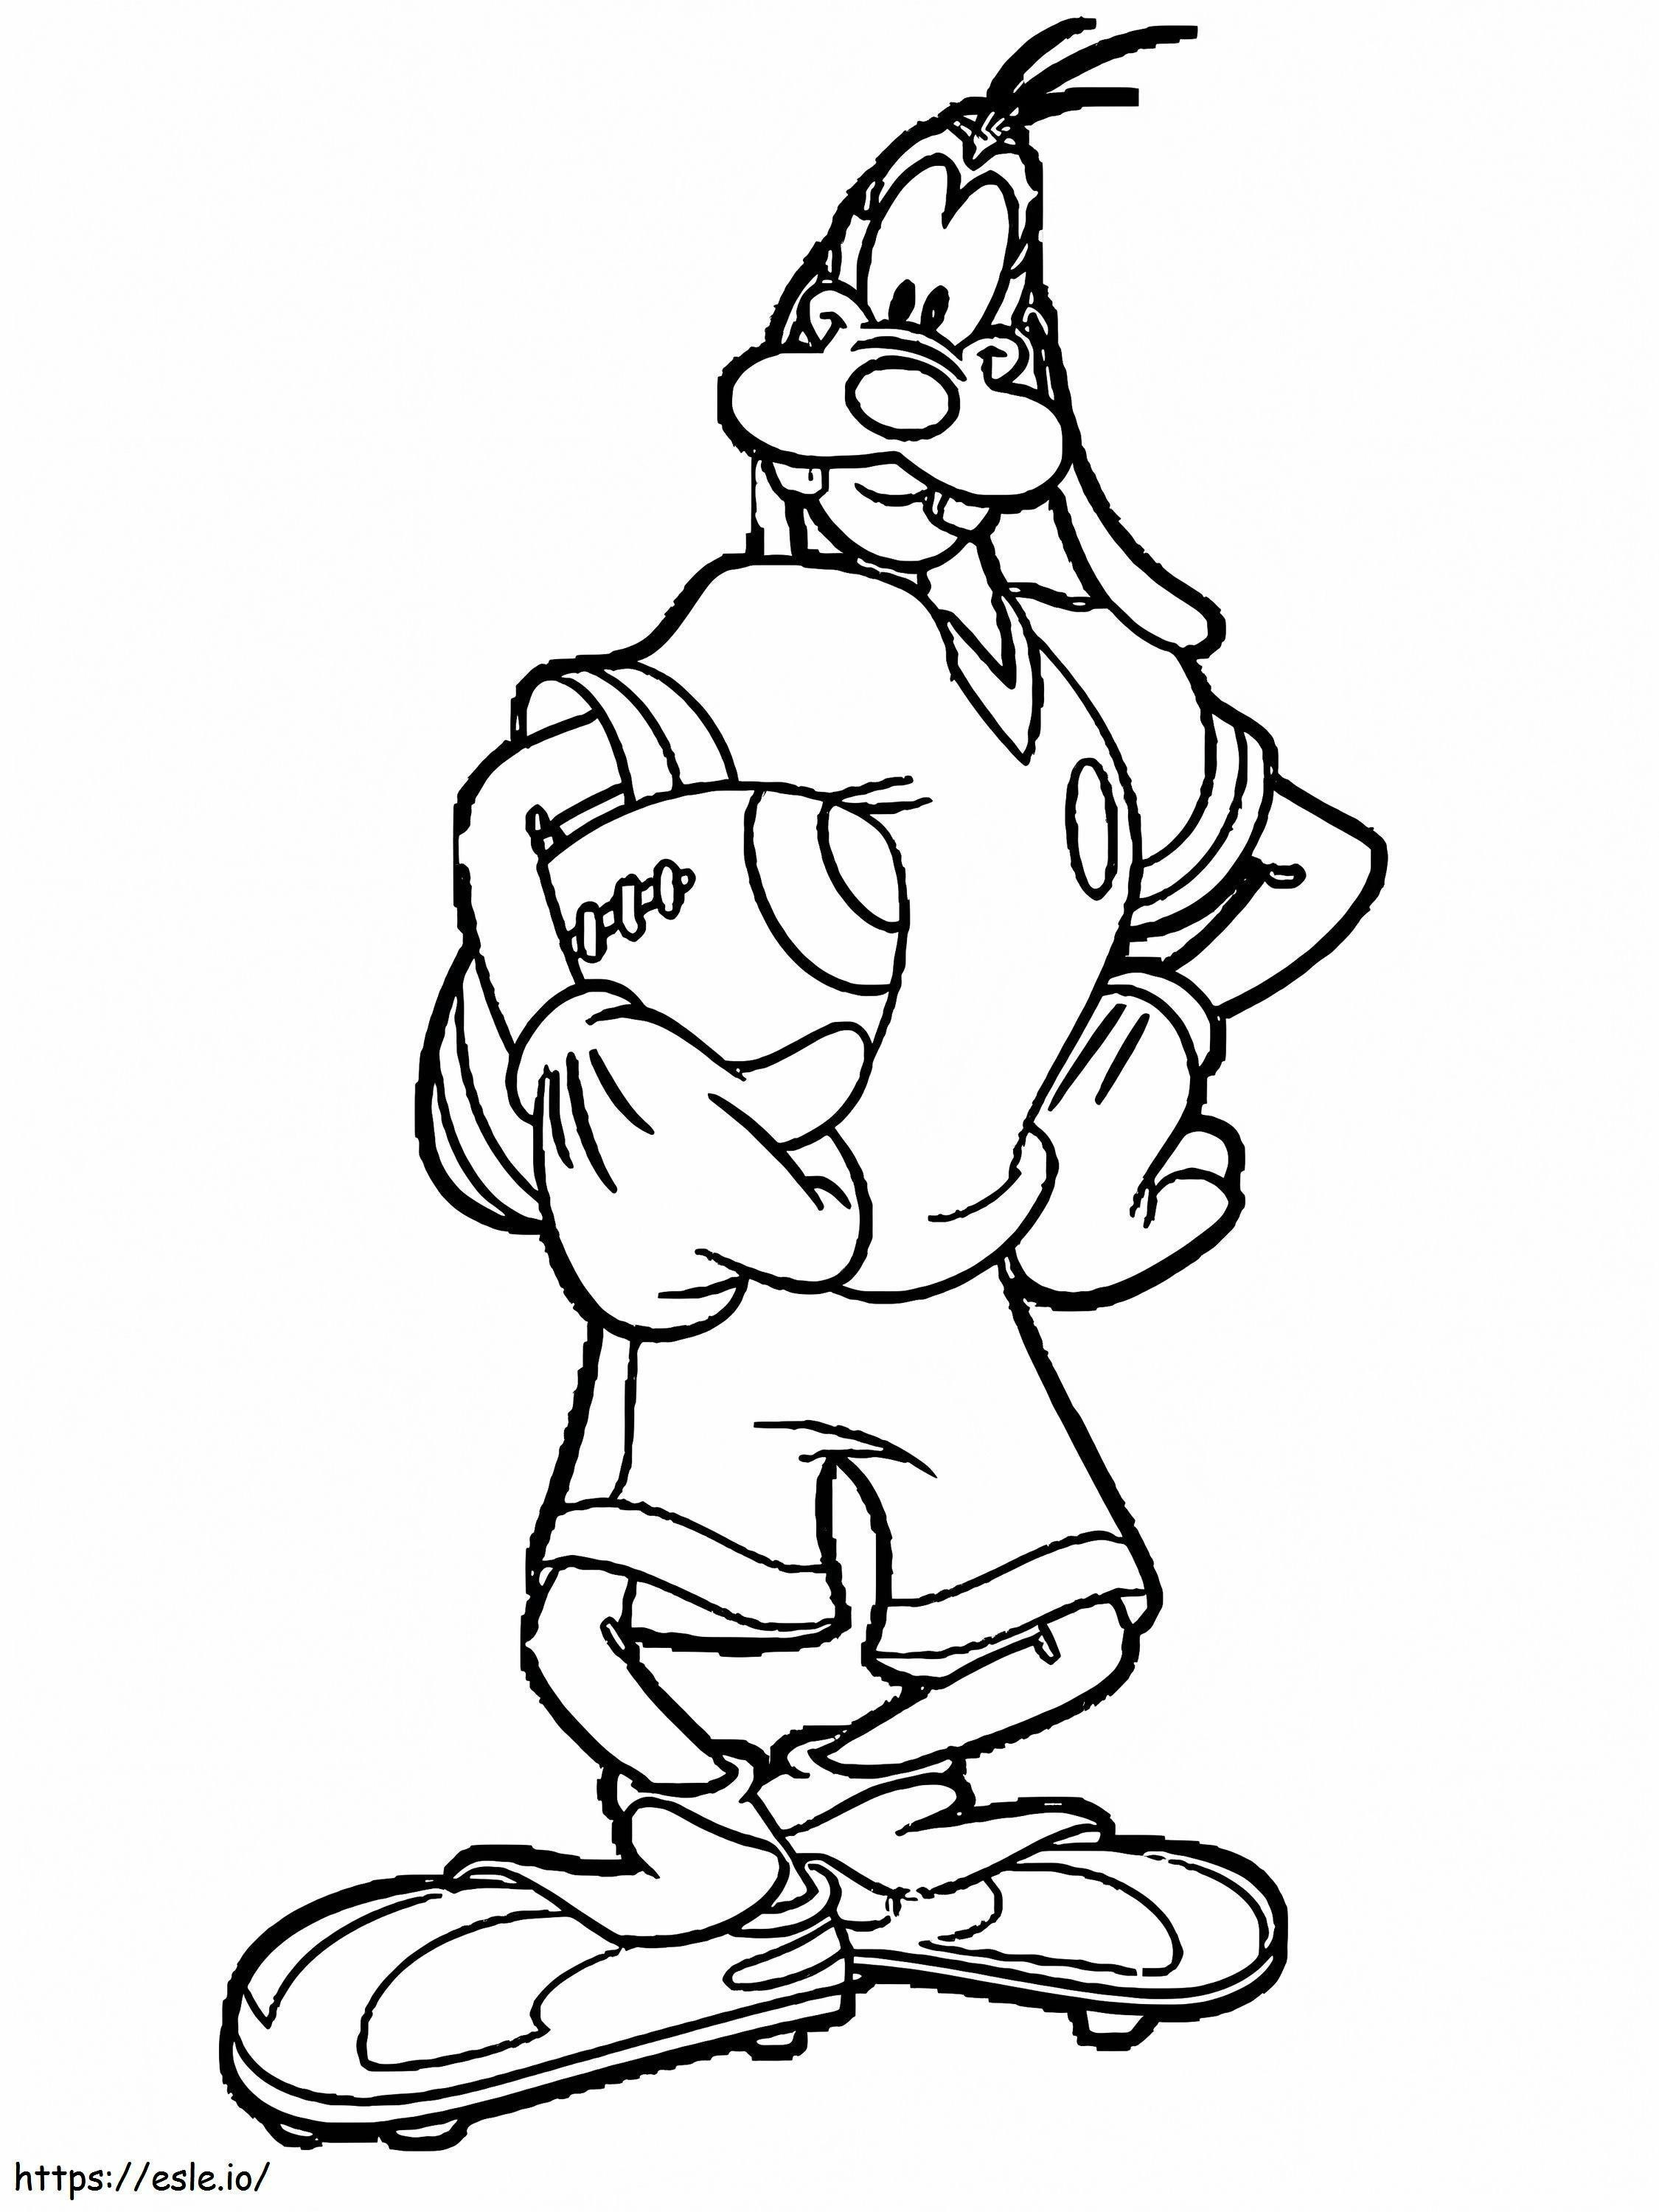 Coloriage Dingo joue au rugby à imprimer dessin